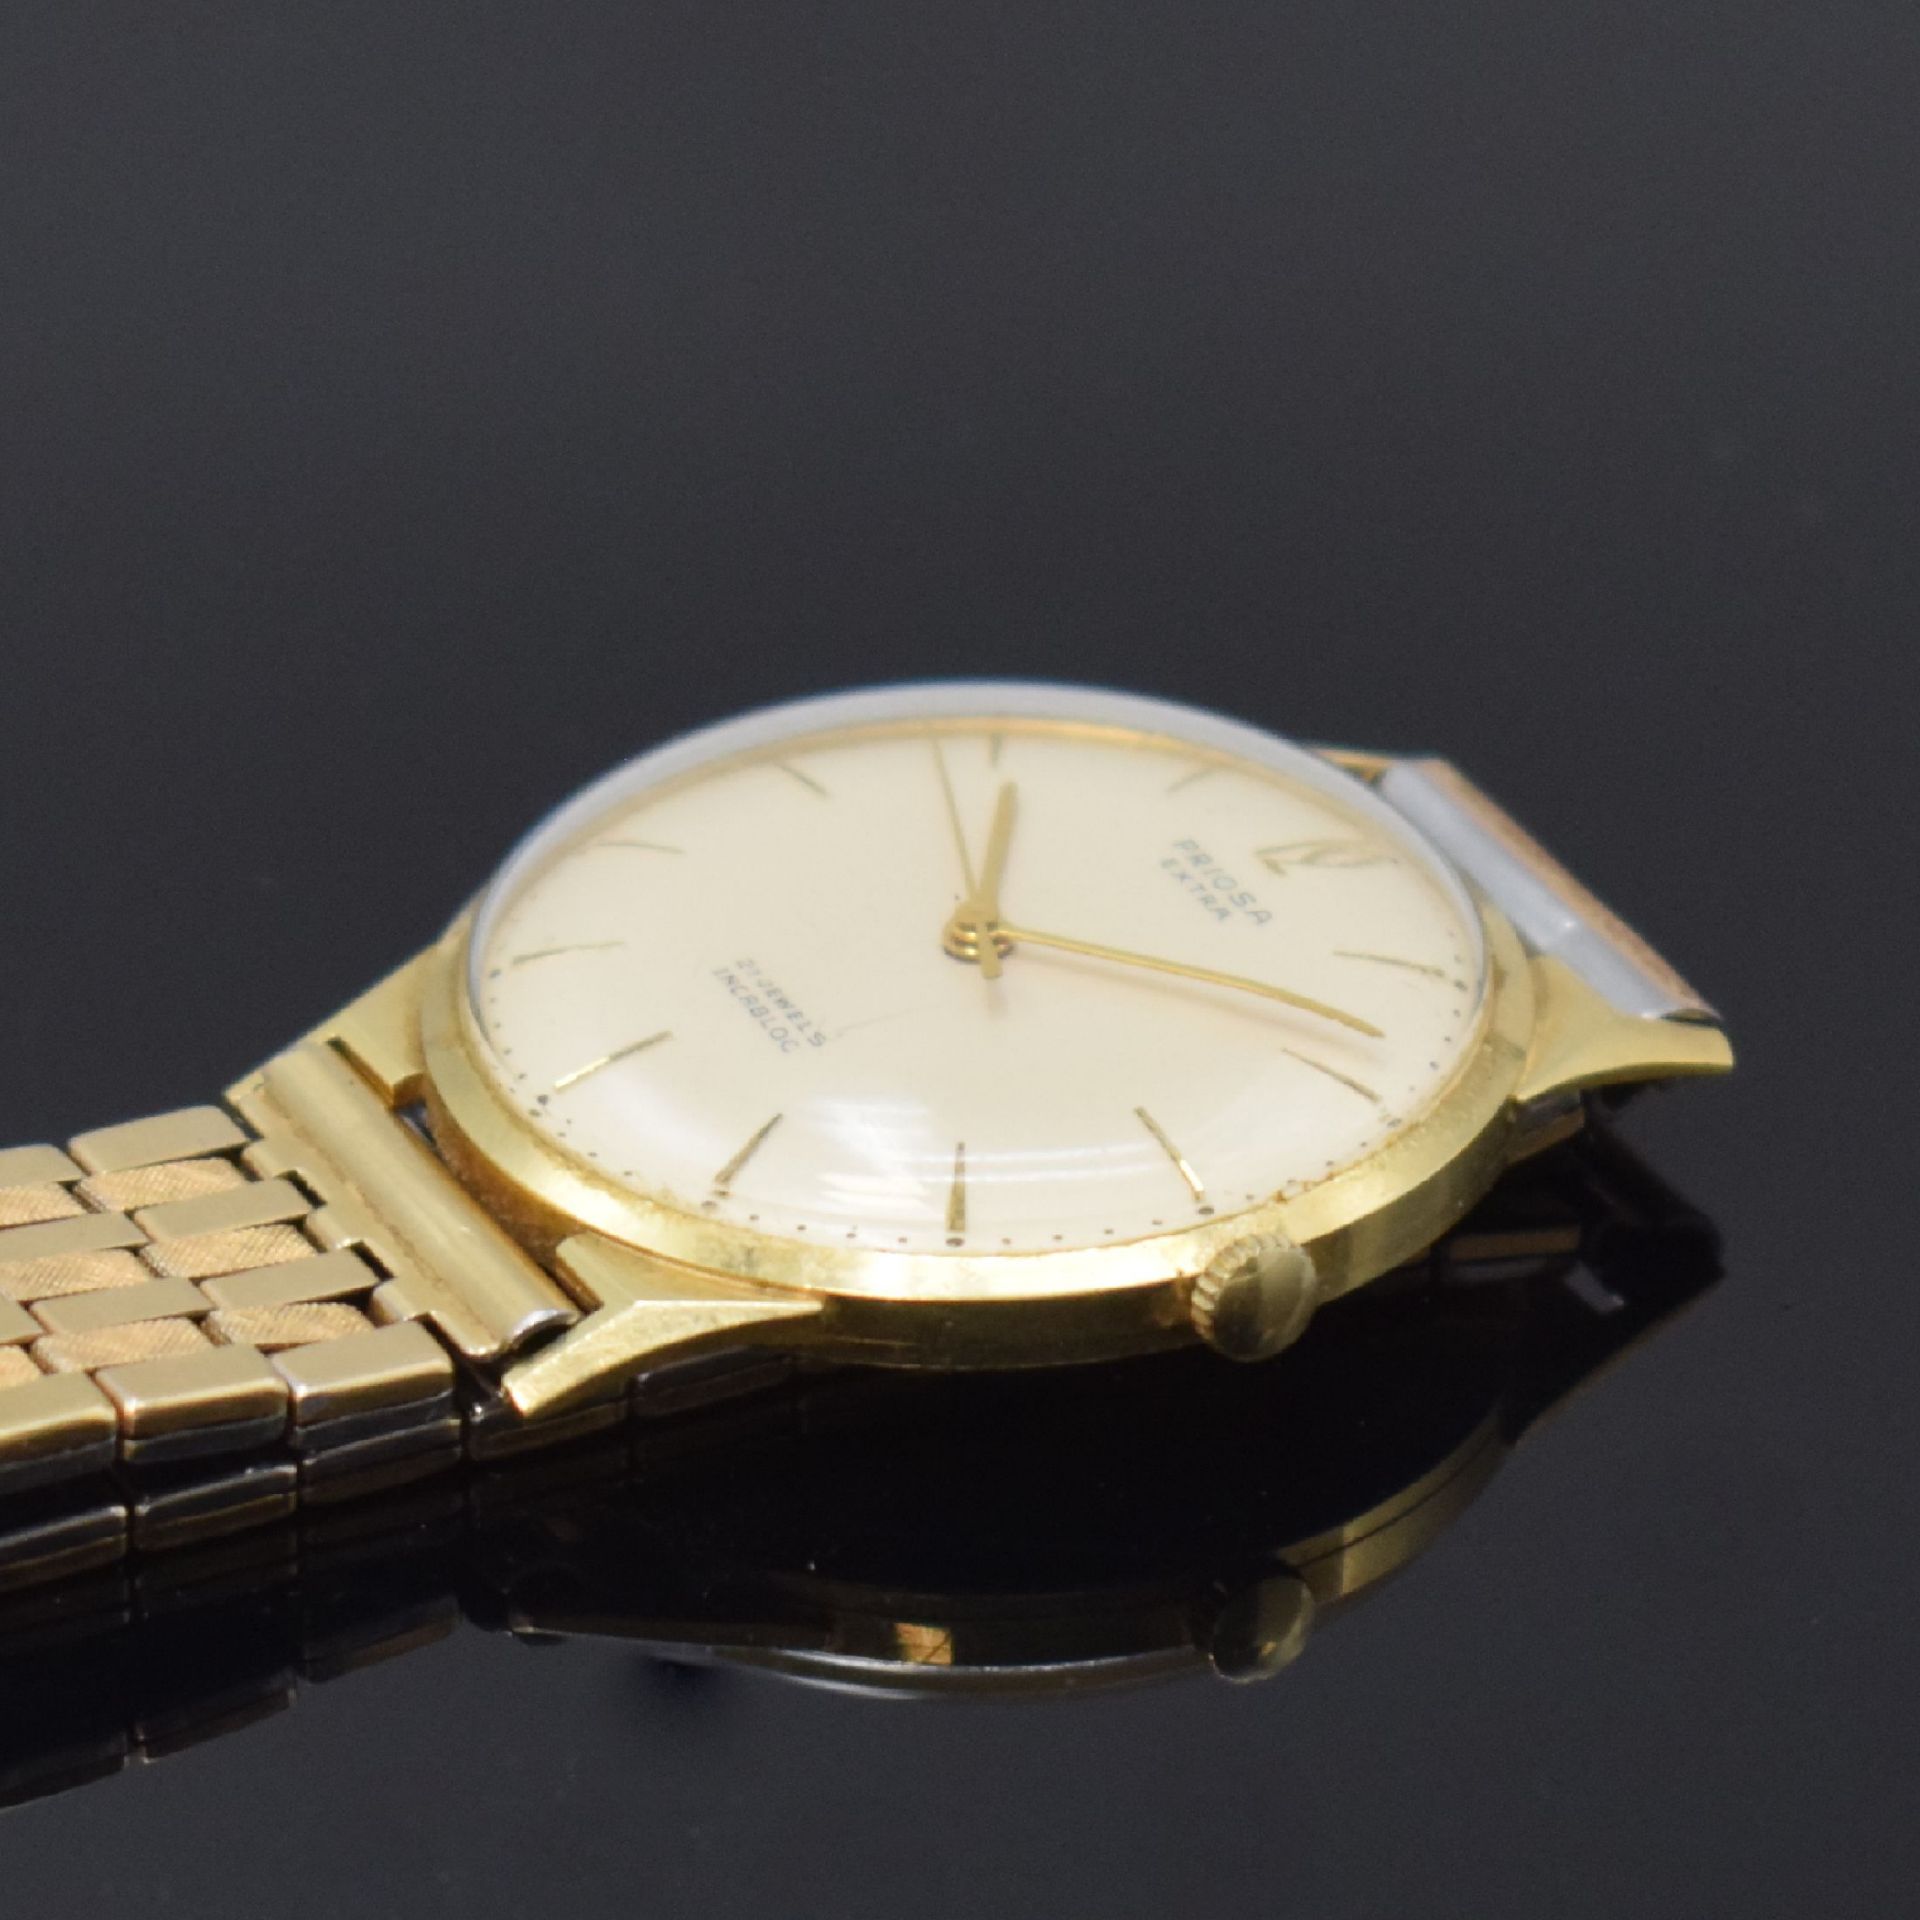 PRIOSA Extra Armbanduhr in GG 585/000, Schweiz um 1960, - Bild 3 aus 4